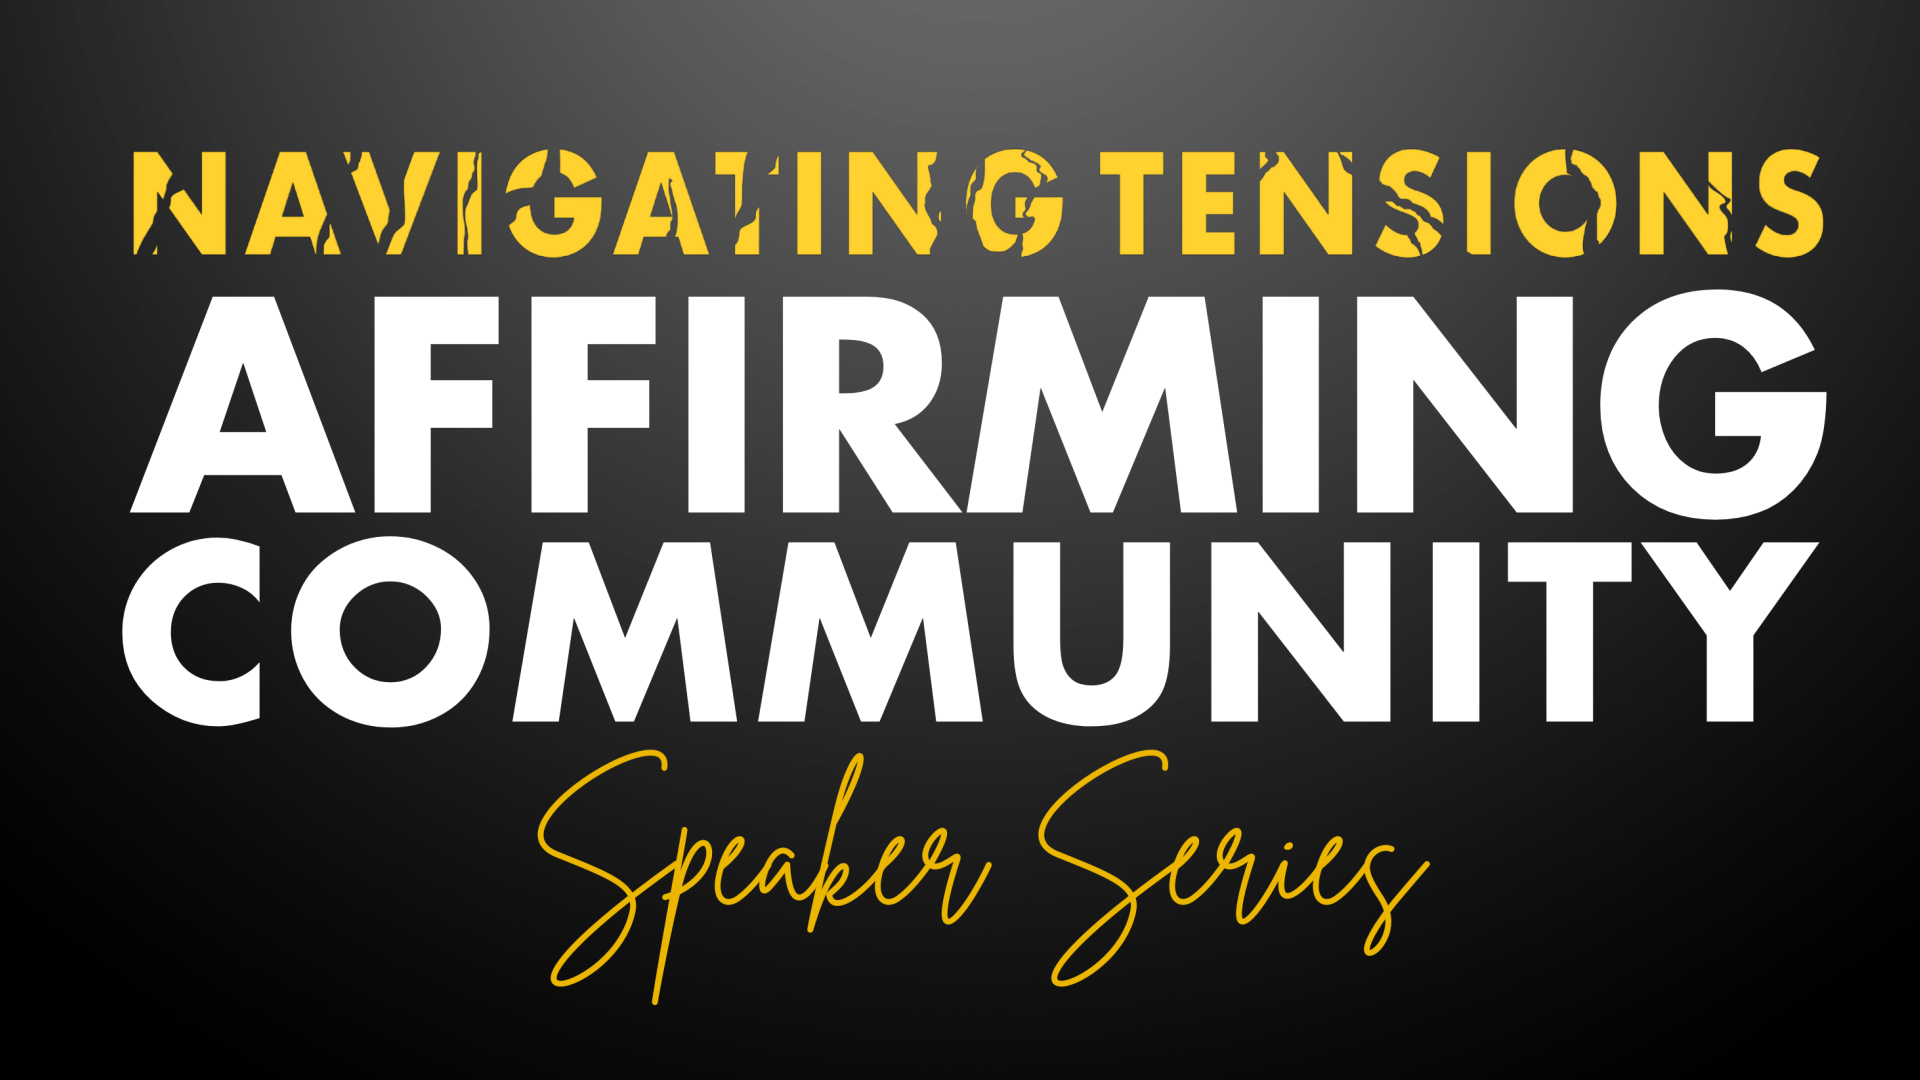 Navigating Tensions, Affirming Community Speaker Series<br />
